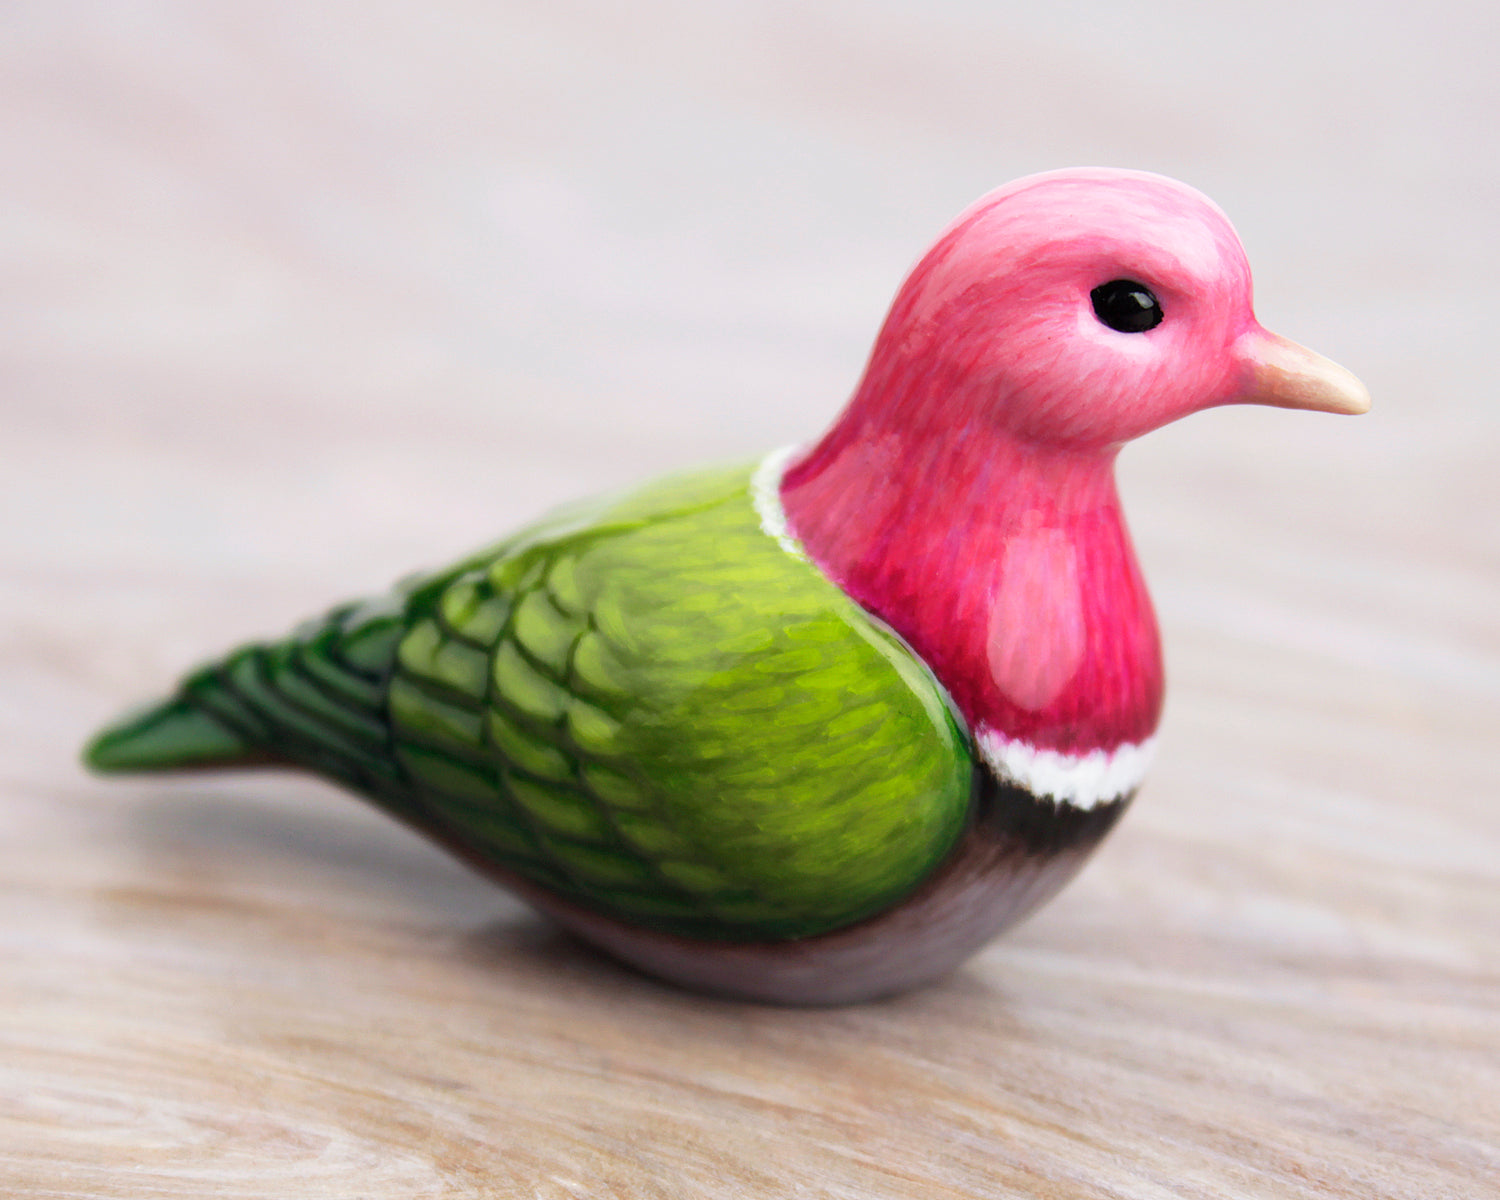 pink-headed fruit-dove